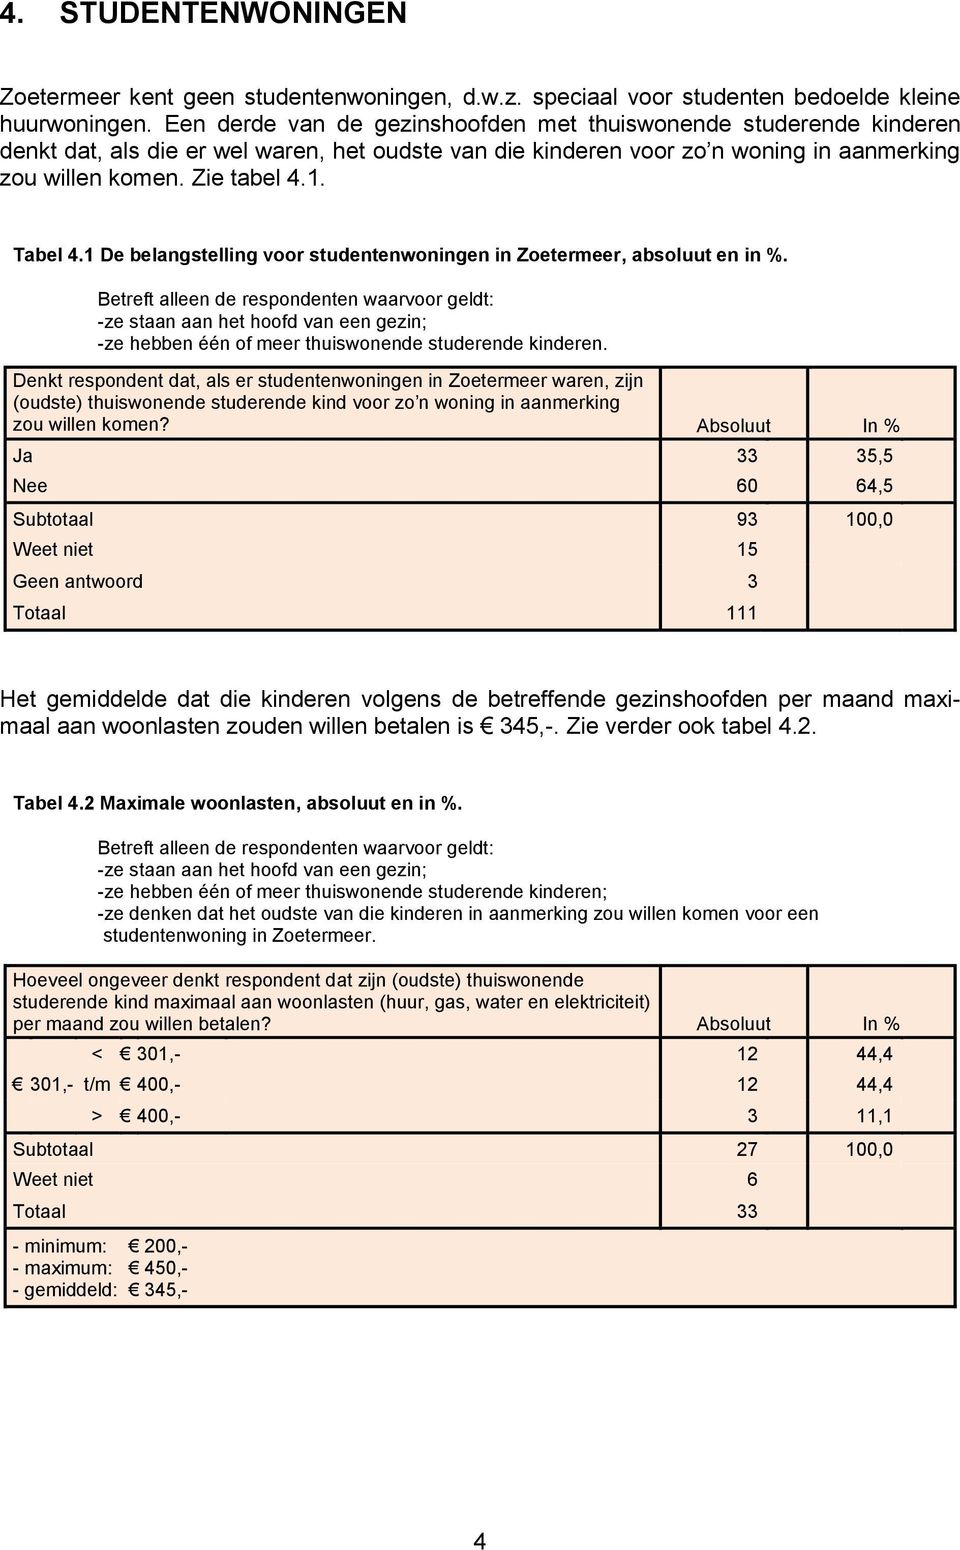 Tabel 4.1 De belangstelling voor studentenwoningen in Zoetermeer, absoluut en in %.